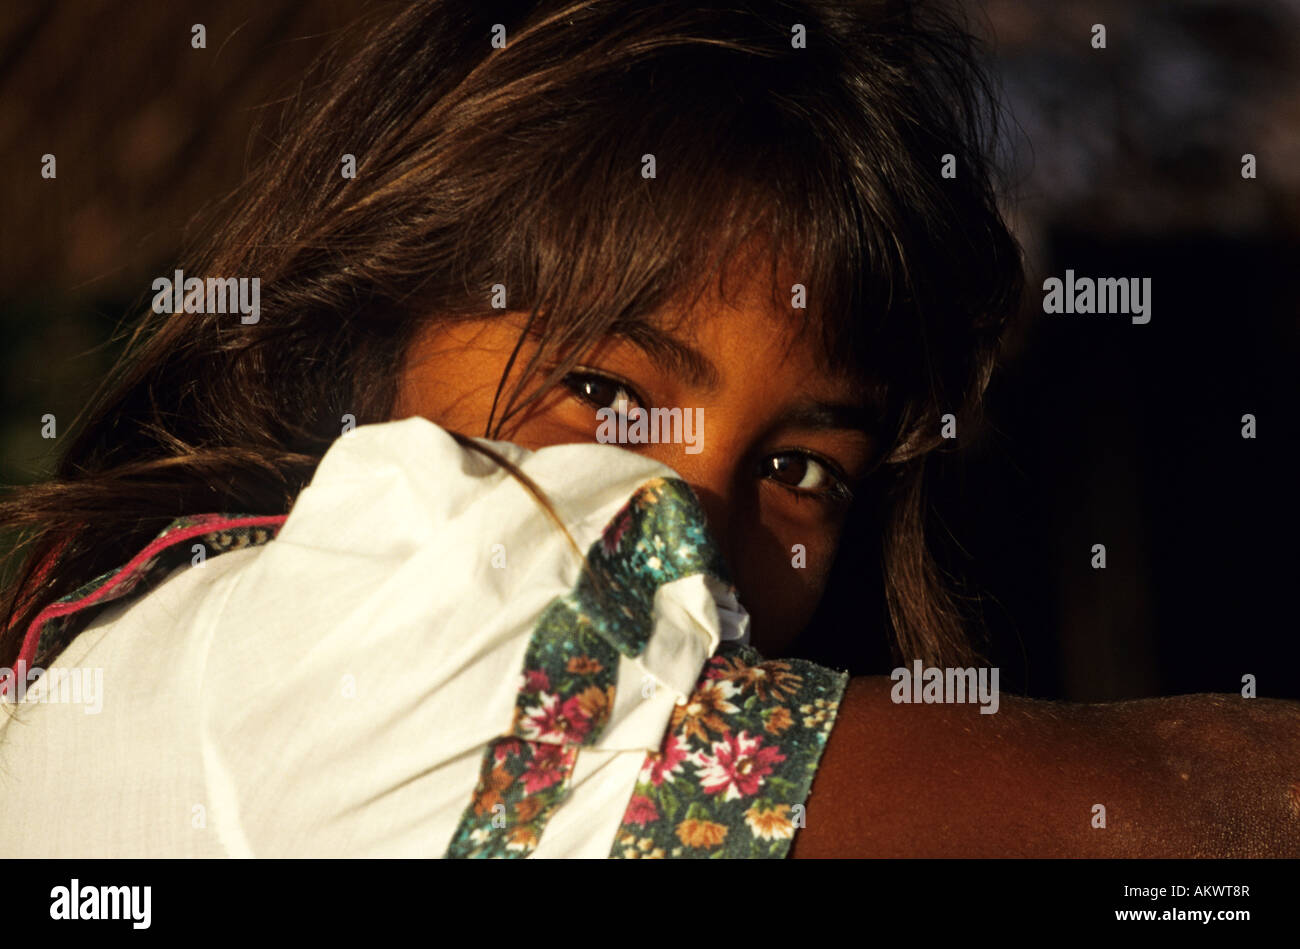 Venezuela, delta of Orinoco River, Manamo River, portrait of Warao Indian child Stock Photo